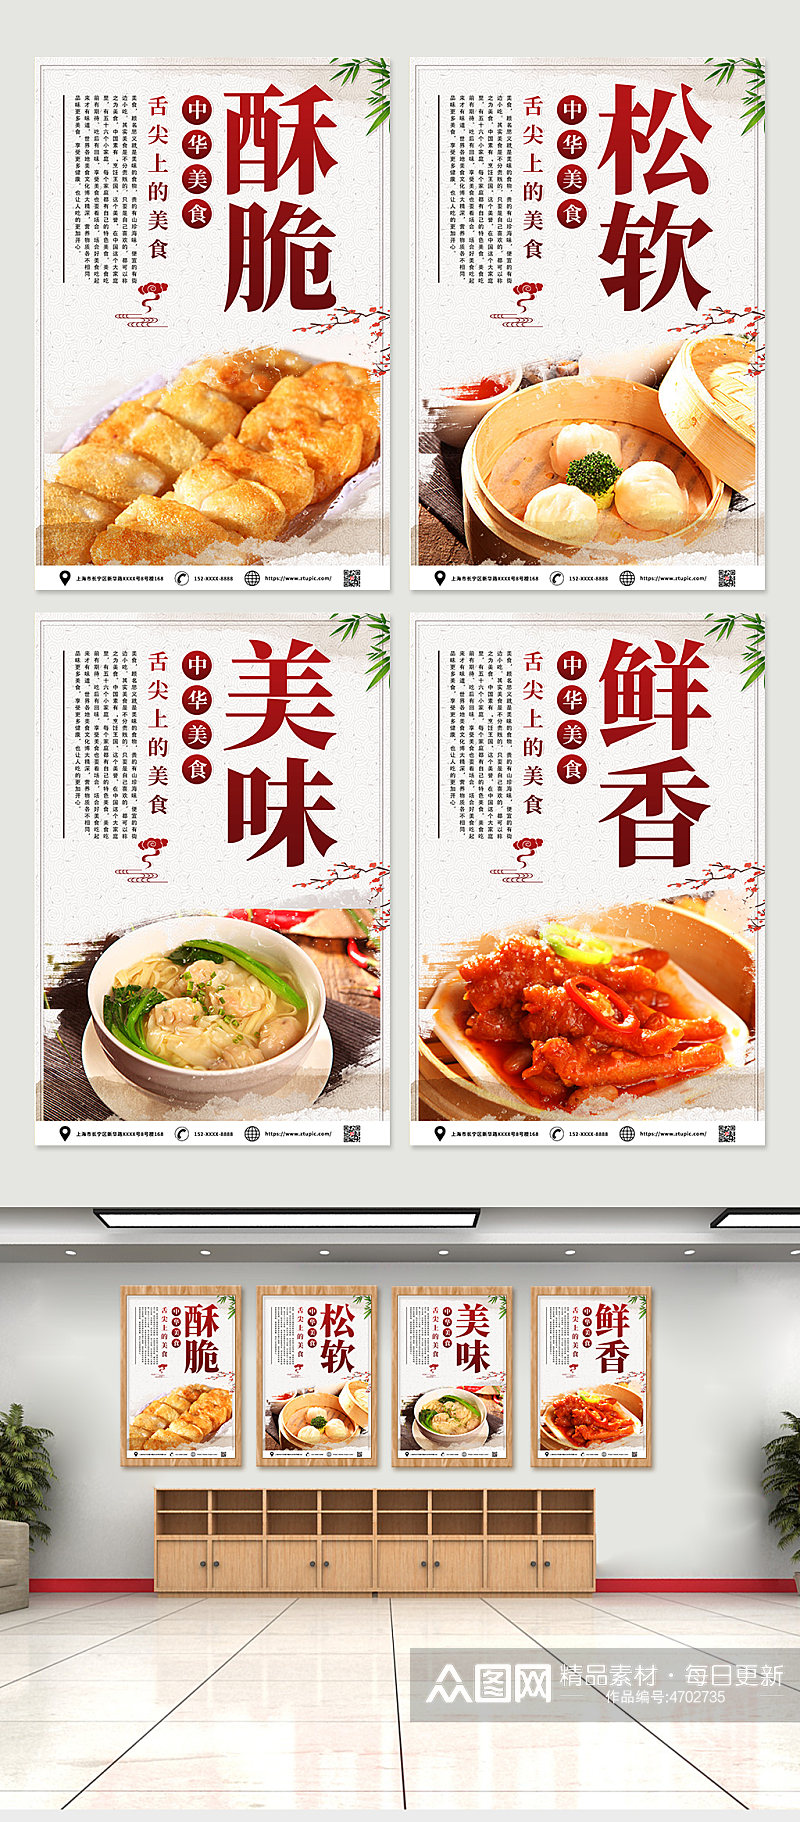 创意快餐早茶早餐时尚菜品灯箱传统美食系列海报素材